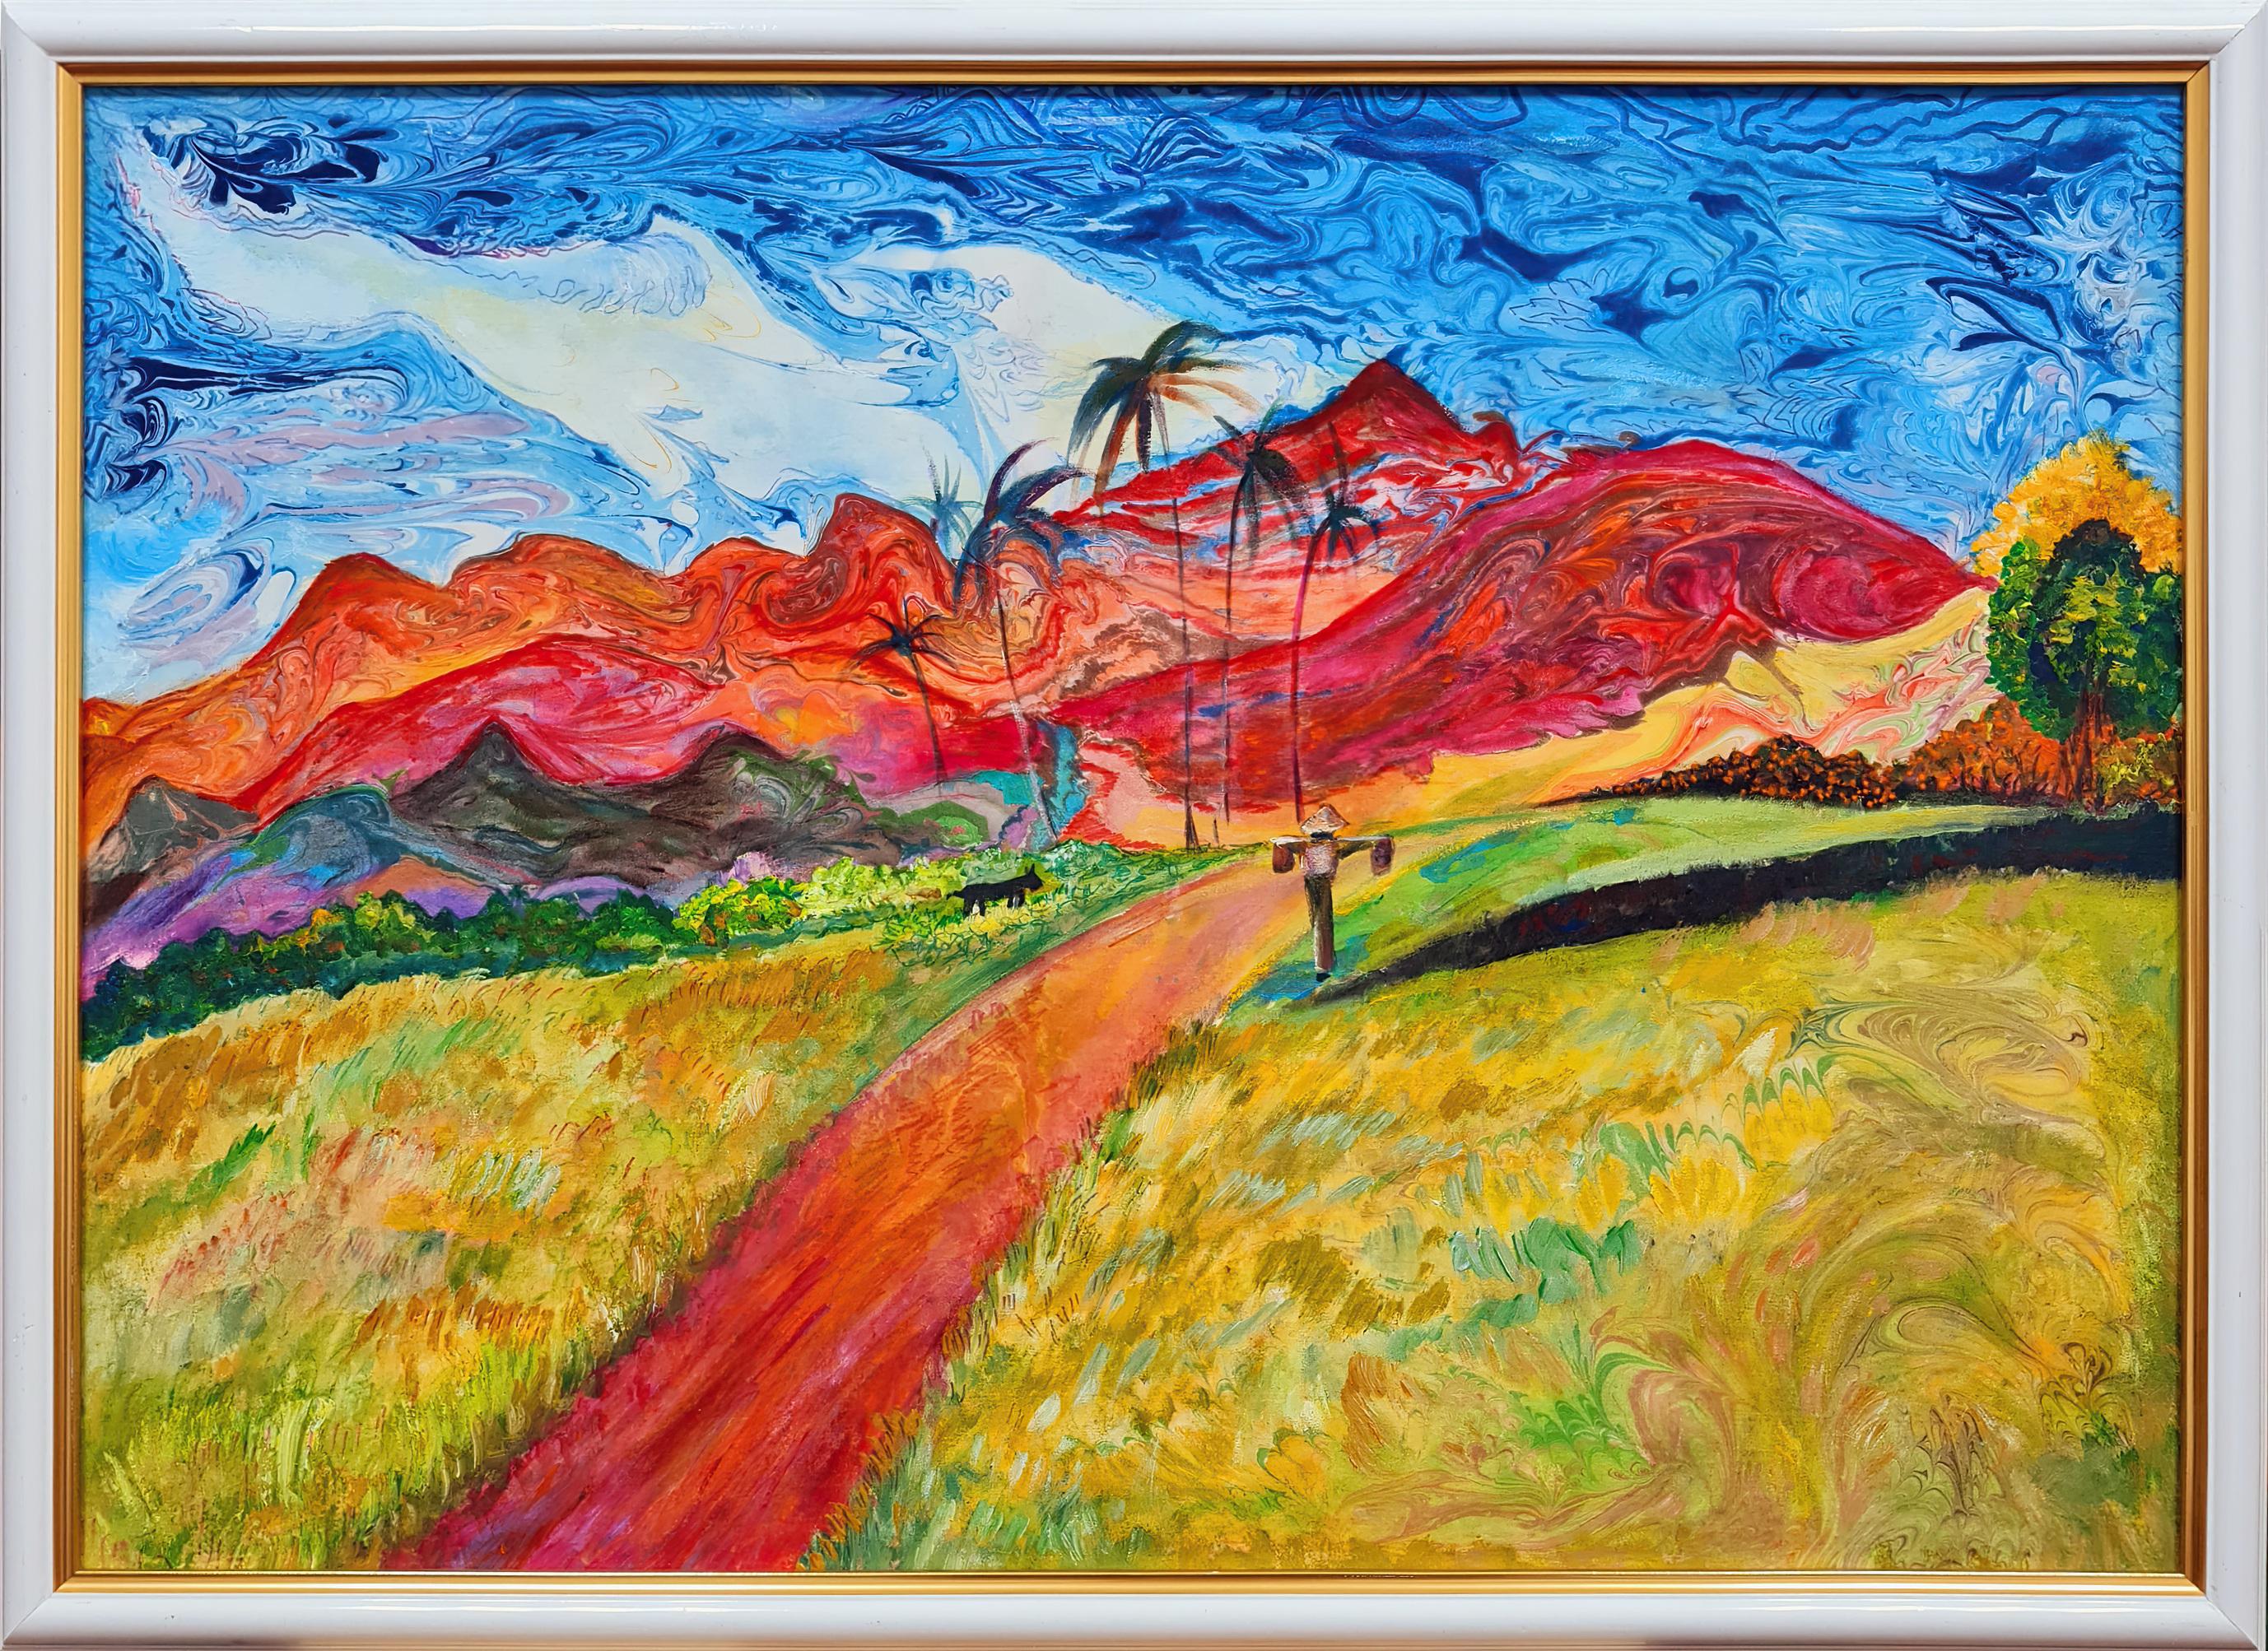 Le paysage. Montagnes rouges dans le style de Paul Gauguin" peinture originale de L